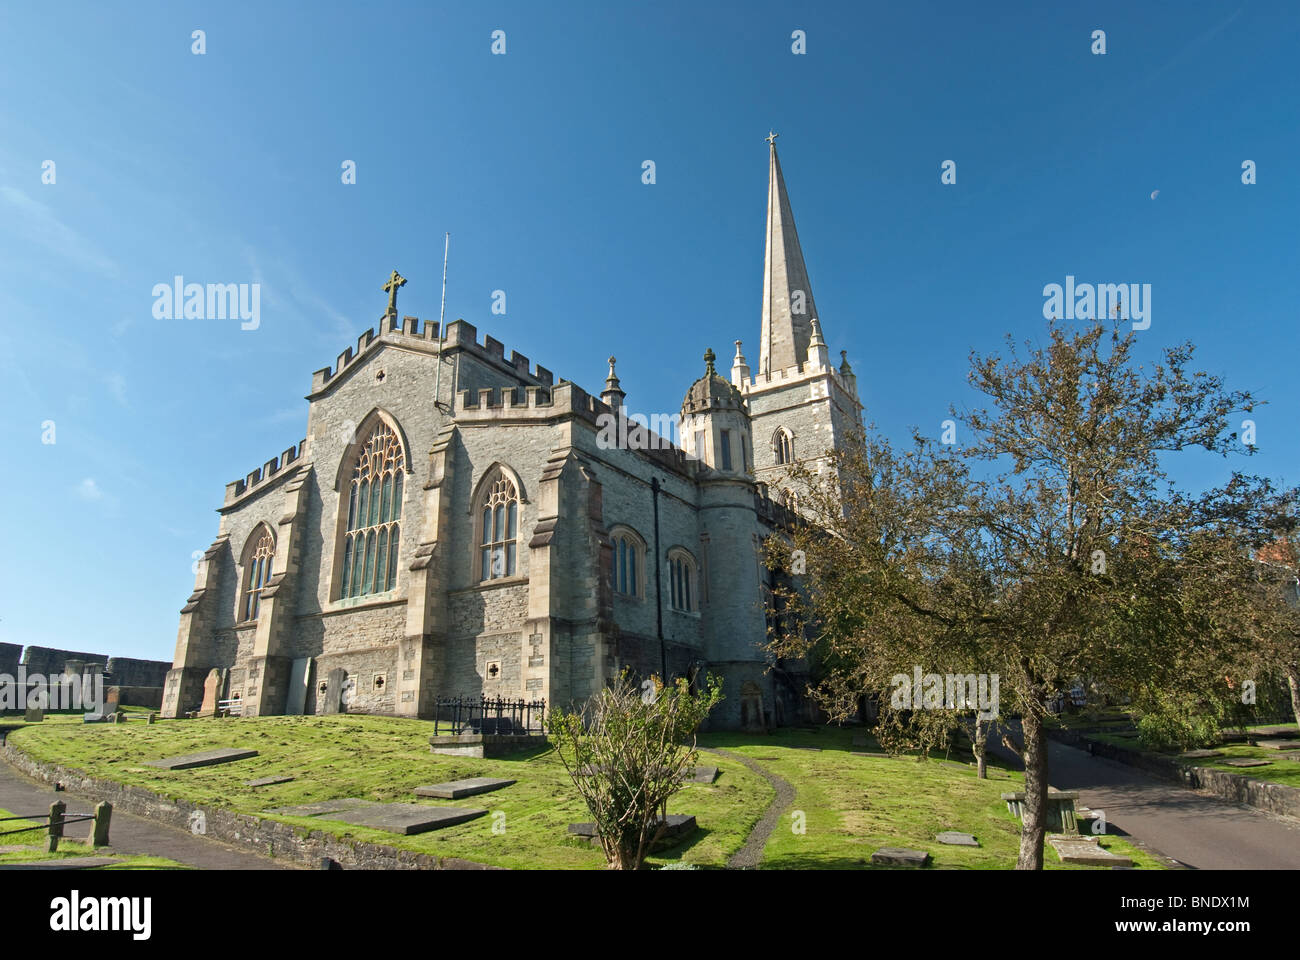 St Columb la Cattedrale è la città di Londonderry il più vecchio edificio, che è stato completato nel 1633. Foto Stock